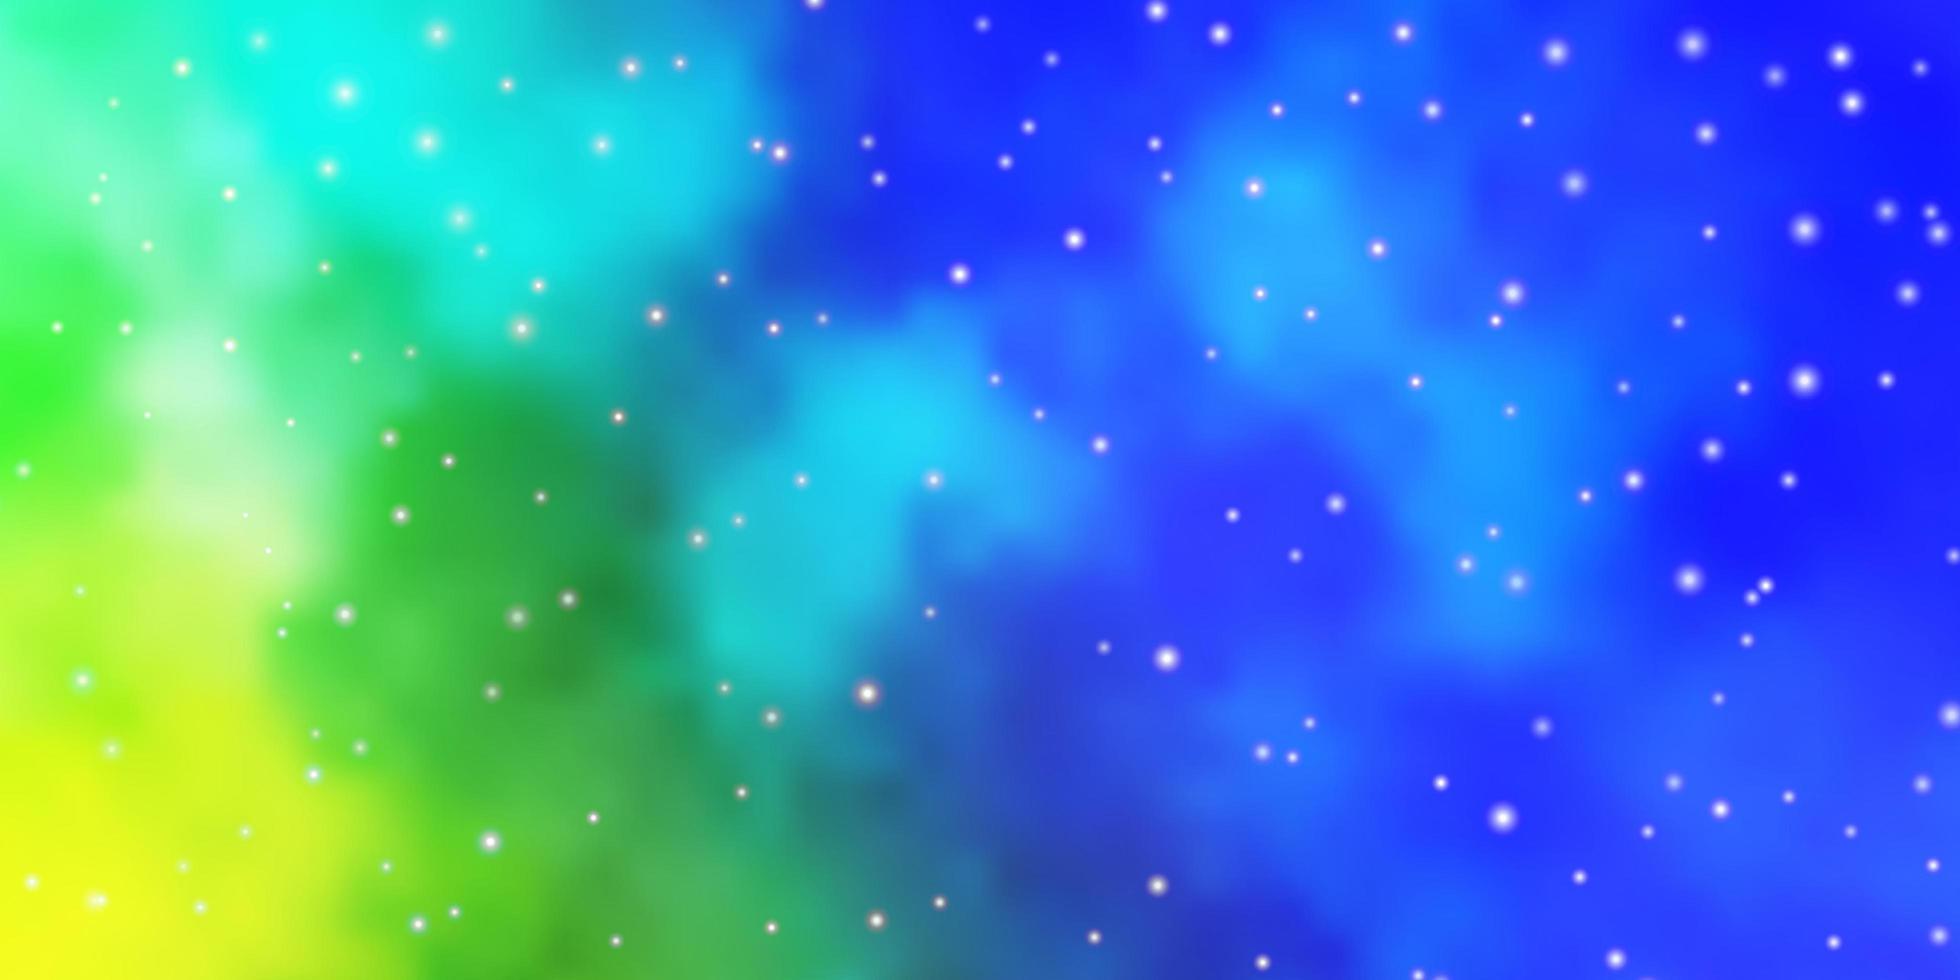 hellblaues, grünes Vektorlayout mit hellen Sternen. vektor